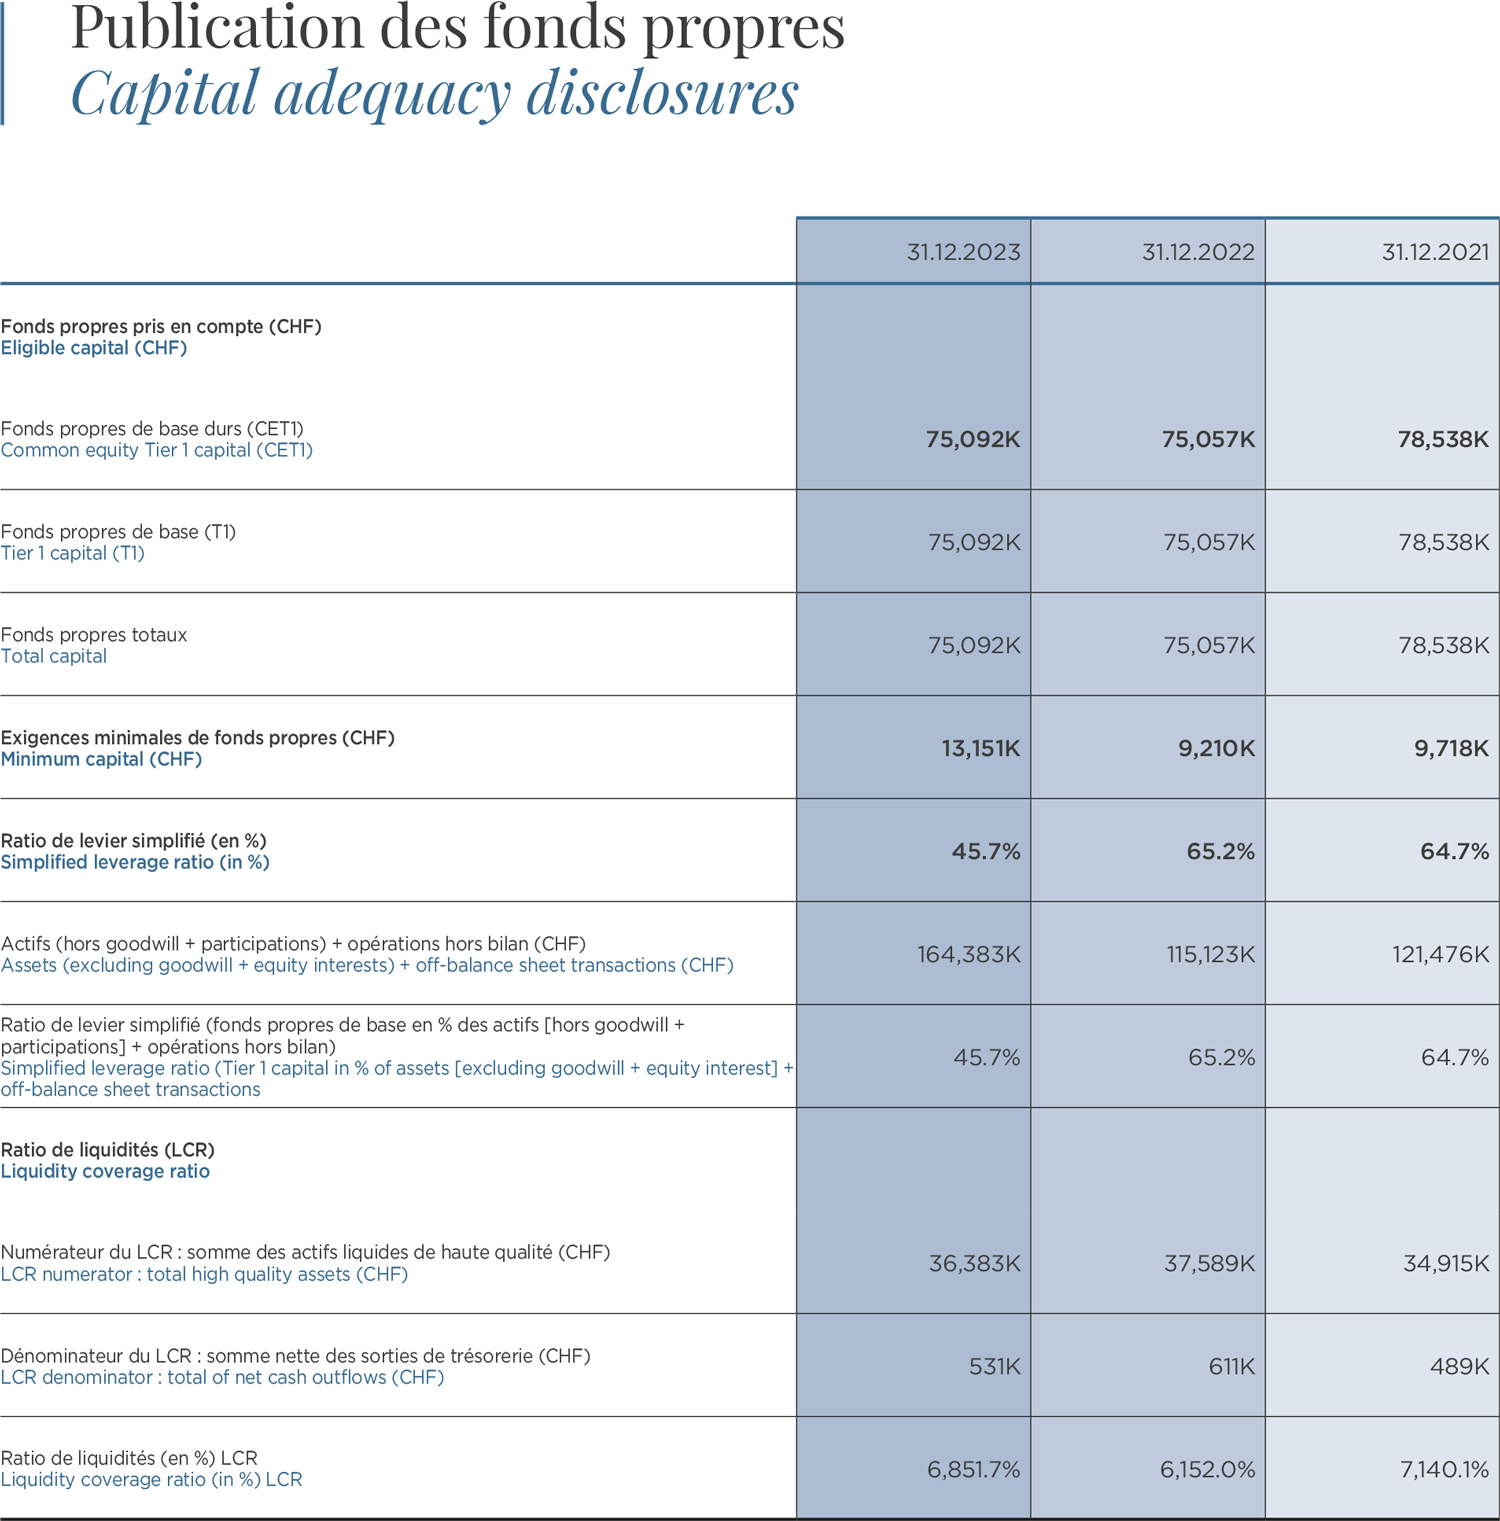 Publication des fonds propres / Capital adequacy disclosures